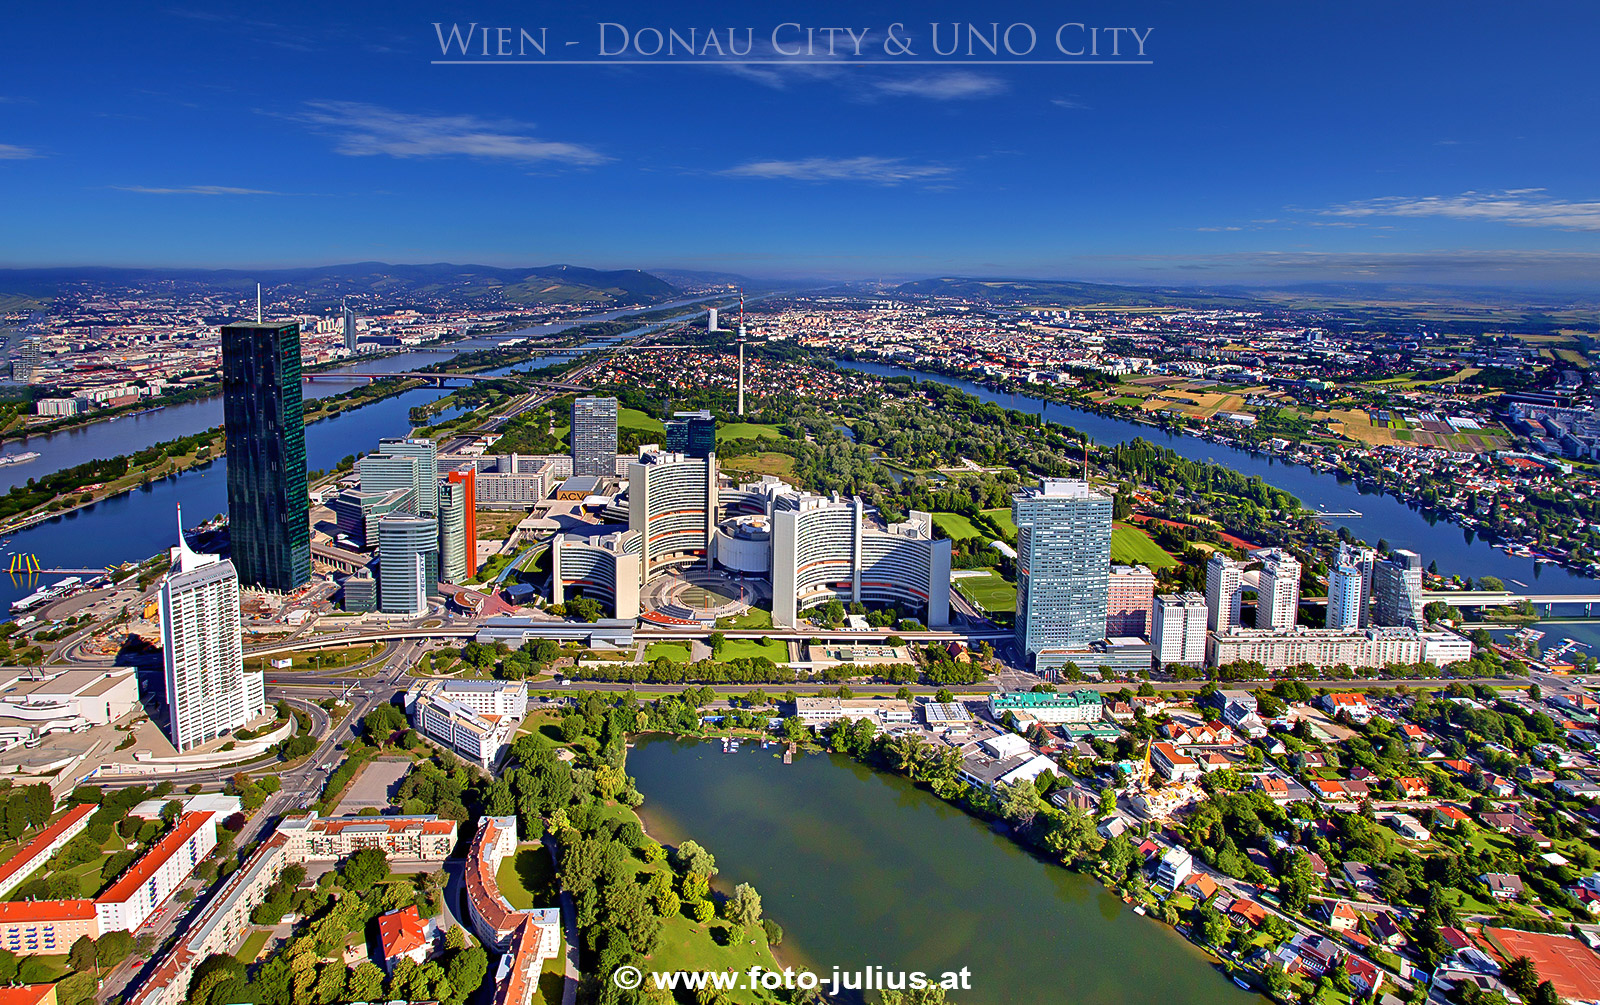 W5895a_Donau_City_UNO_Kaiserwasser.jpg, 933kB